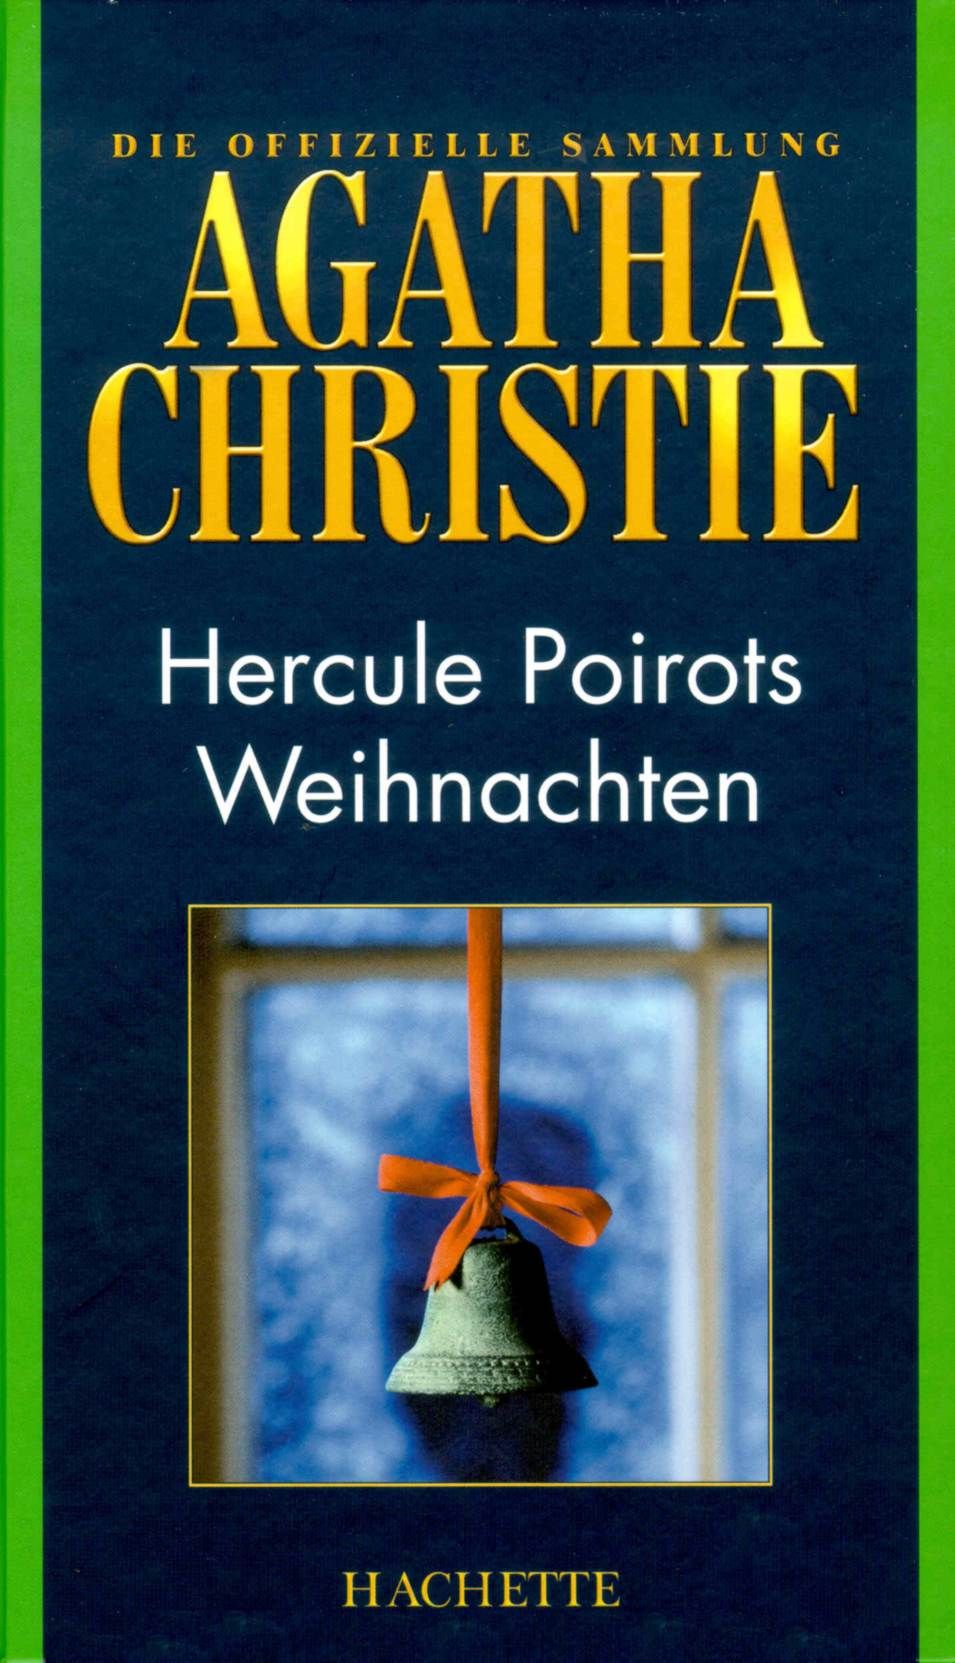 Christie Agatha - Hercule Poirots Weihnachten скачать бесплатно